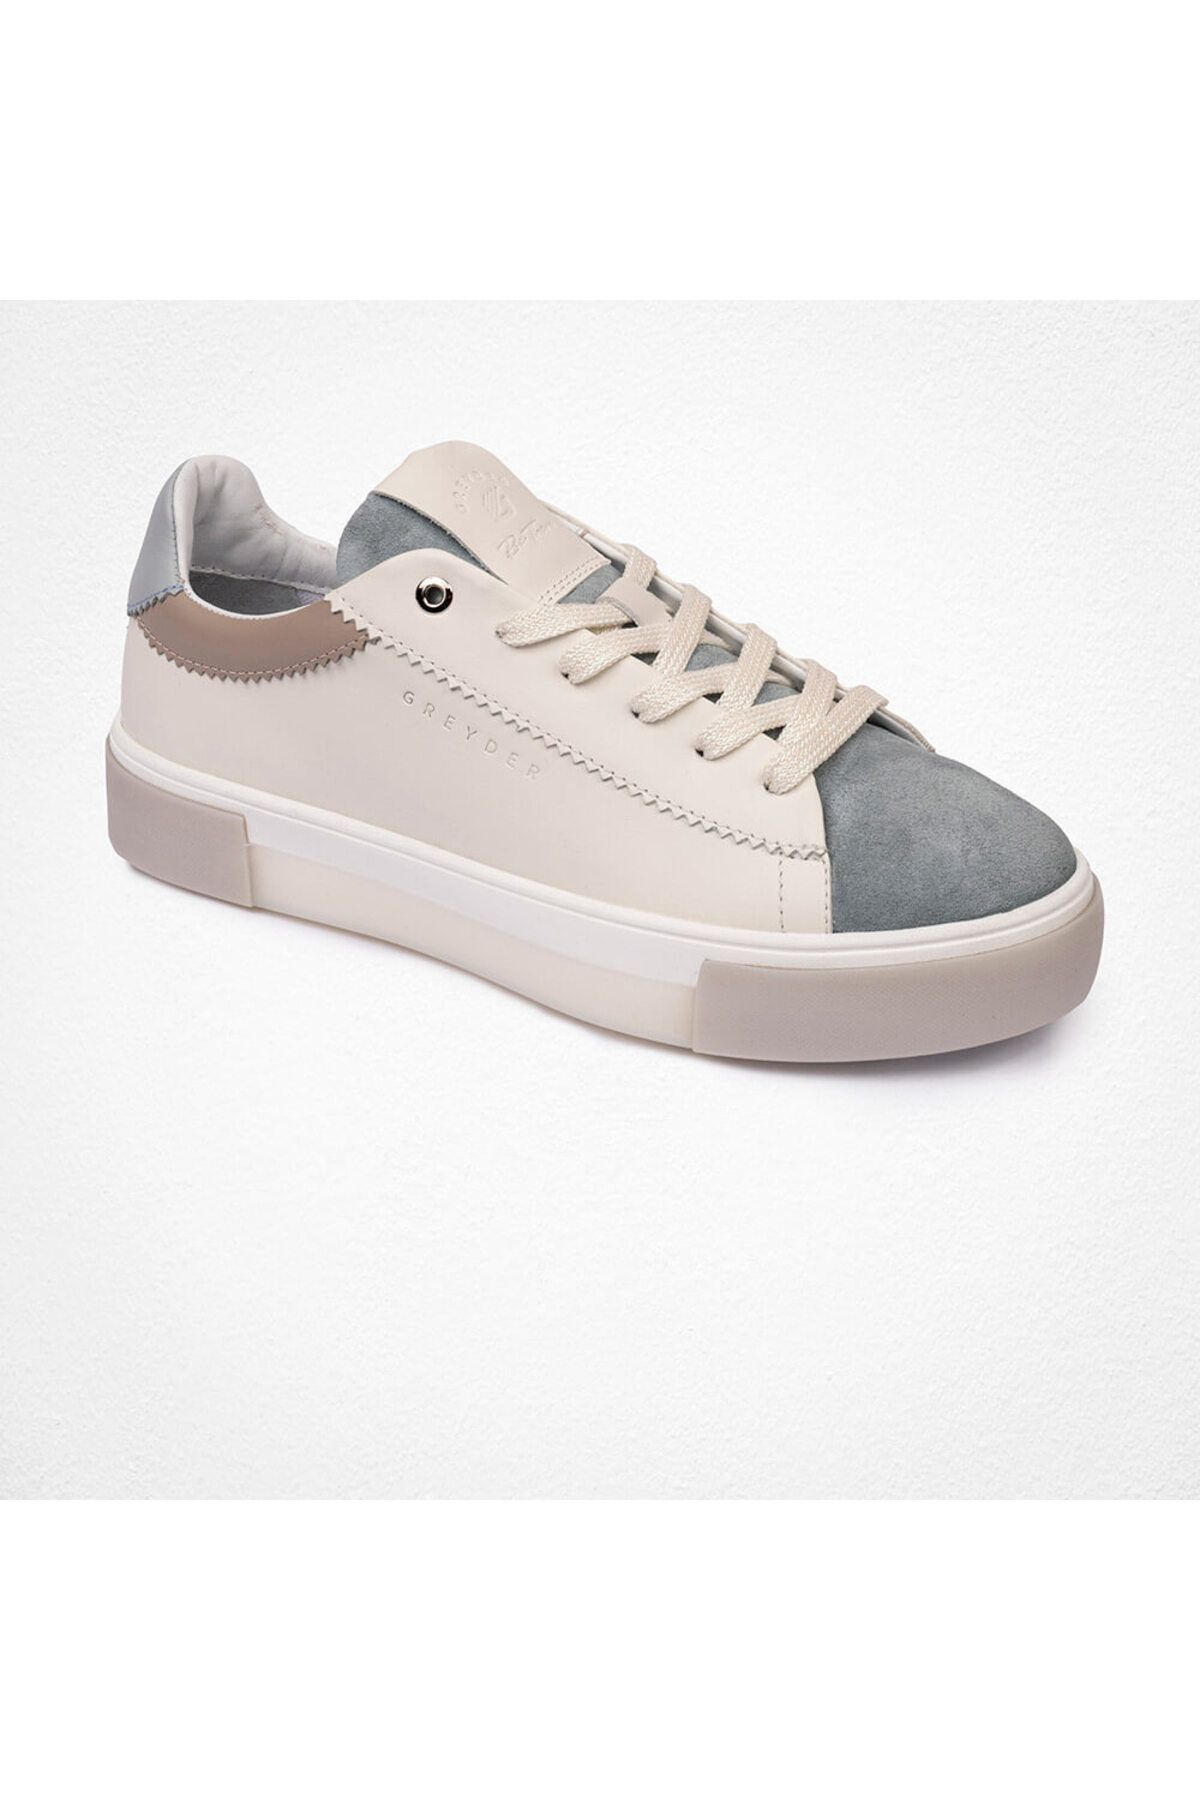 Greyder Kadın Beyaz Yeşil Hakiki Deri Sneaker Ayakkabı 4y2sa33200